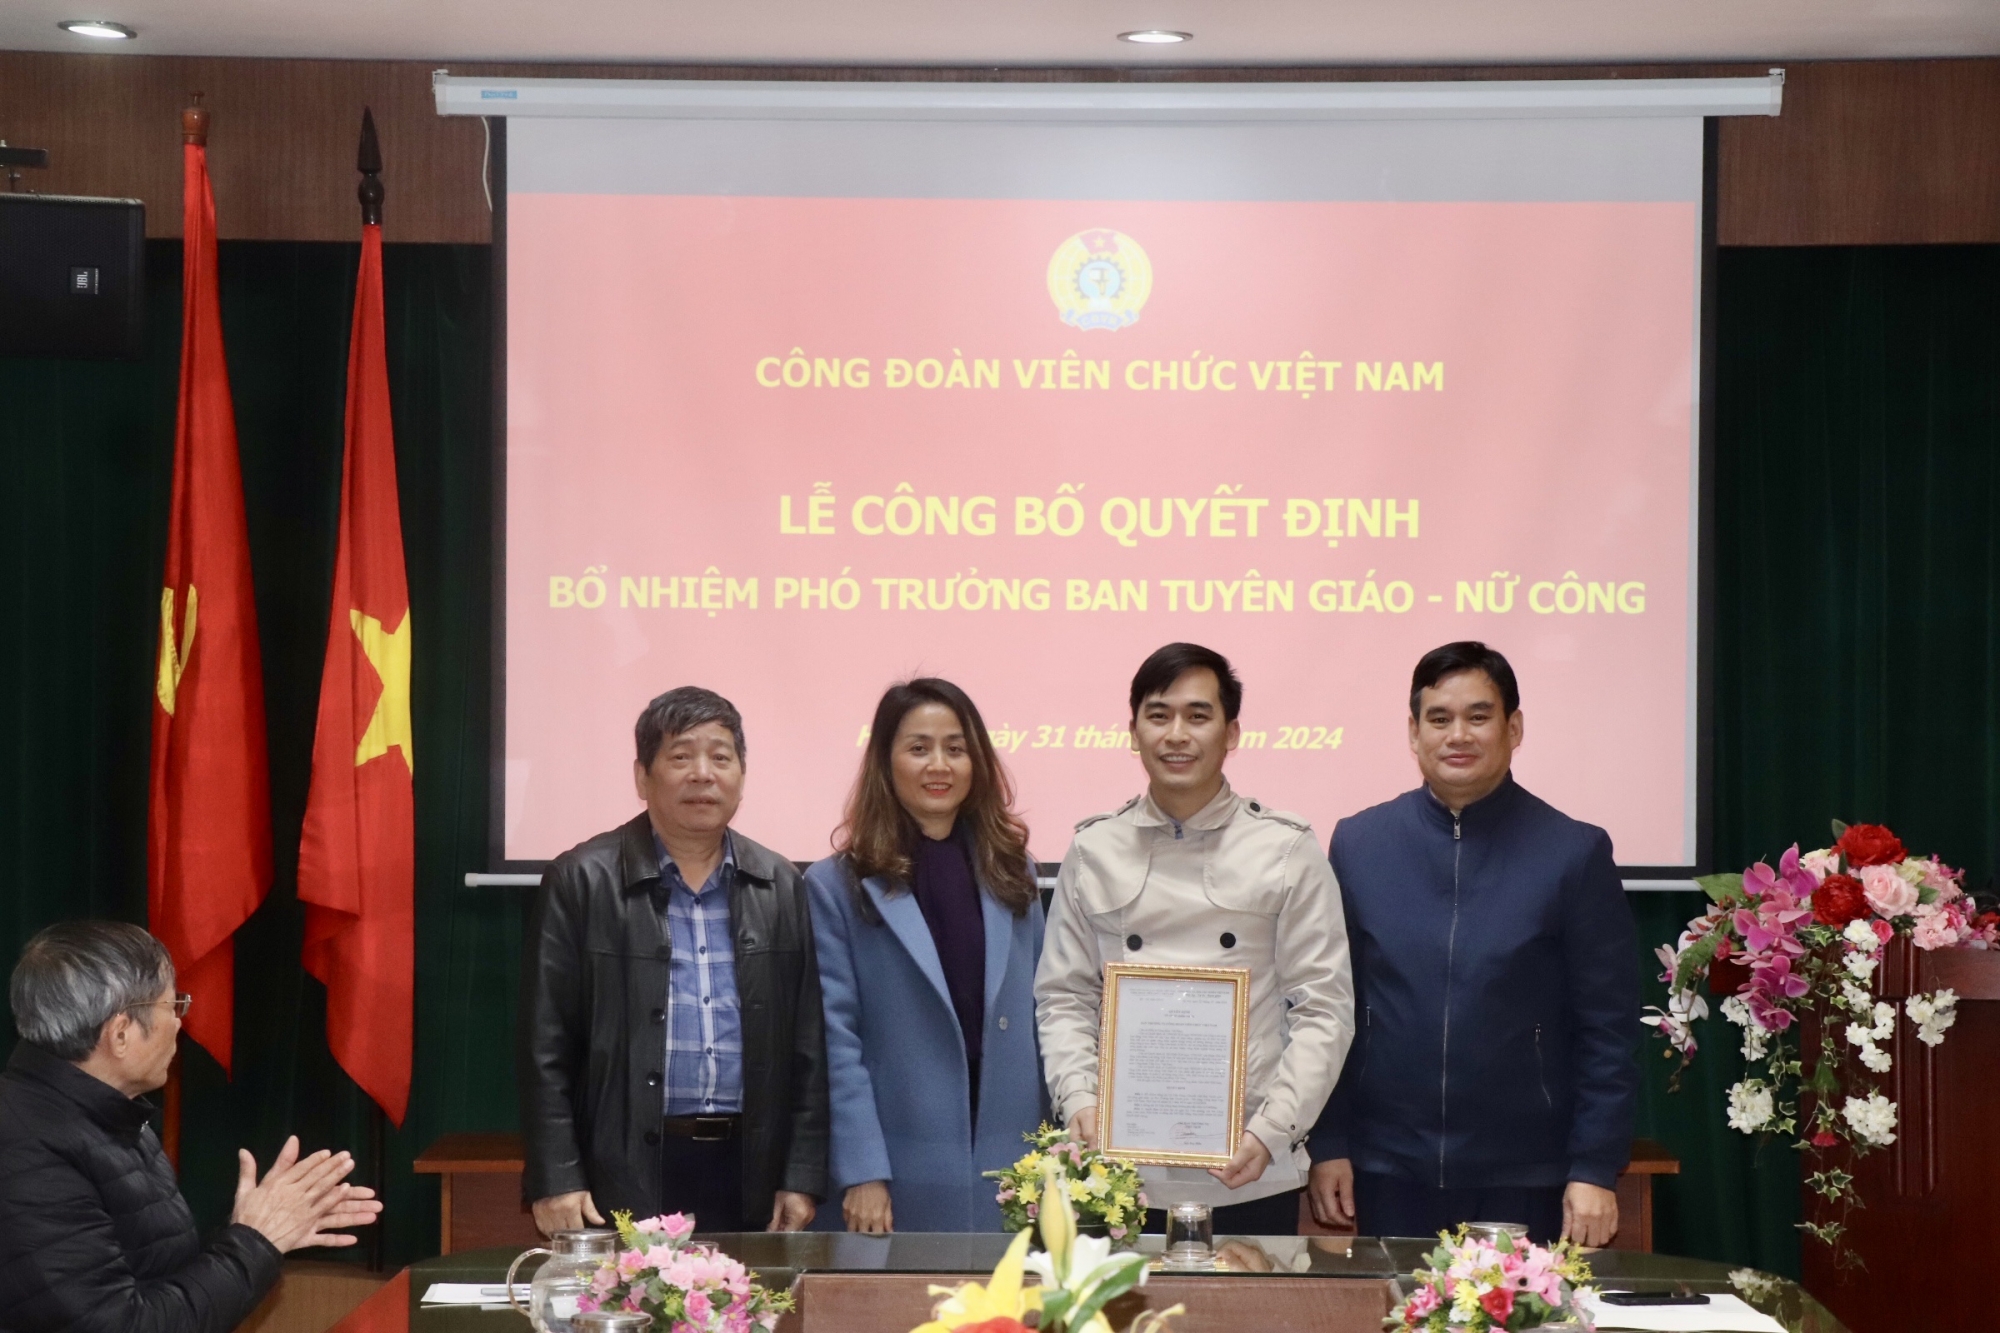 Công bố quyết định bổ nhiệm Phó Trưởng ban Tuyên giáo - Nữ công  Công đoàn Viên chức Việt Nam